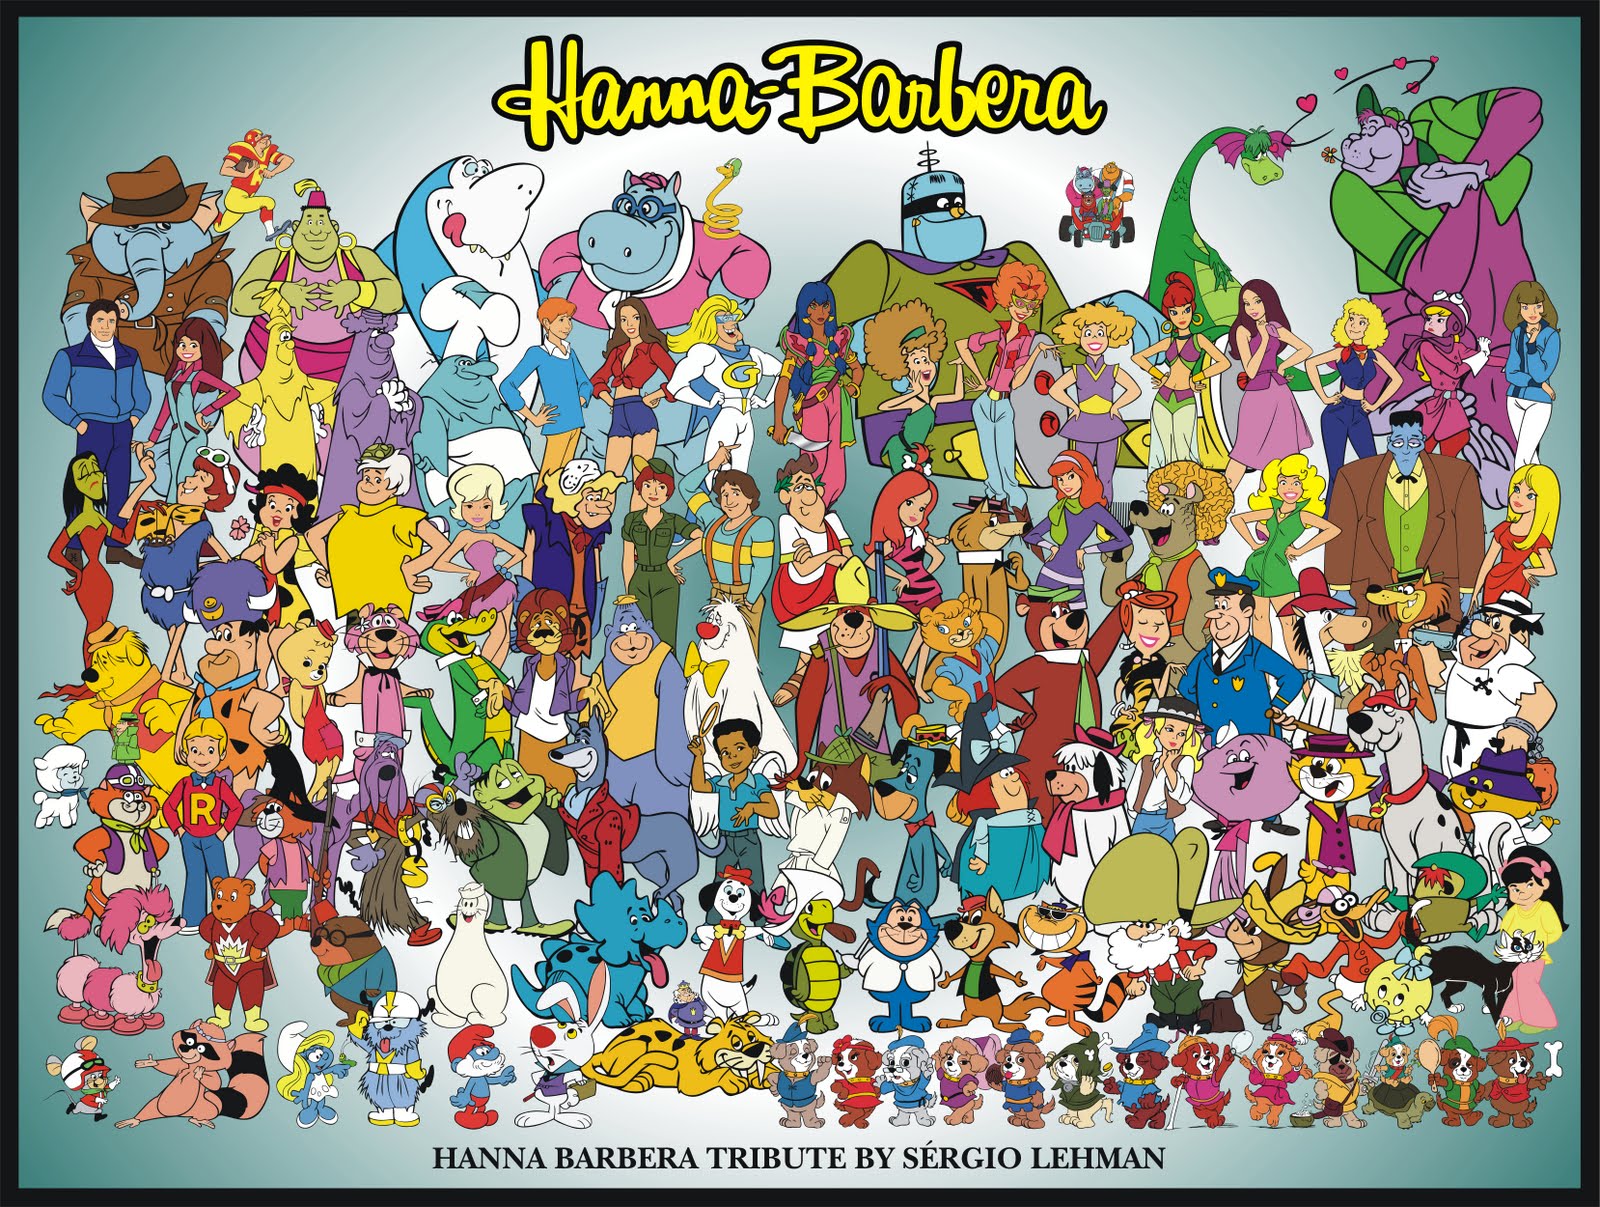 http://4.bp.blogspot.com/-62yAXP2auMs/Tpy4VRzW4TI/AAAAAAAABb8/AngNIjfliss/s1600/Hanna+Barbera+Tribute+1+e+2.jpg